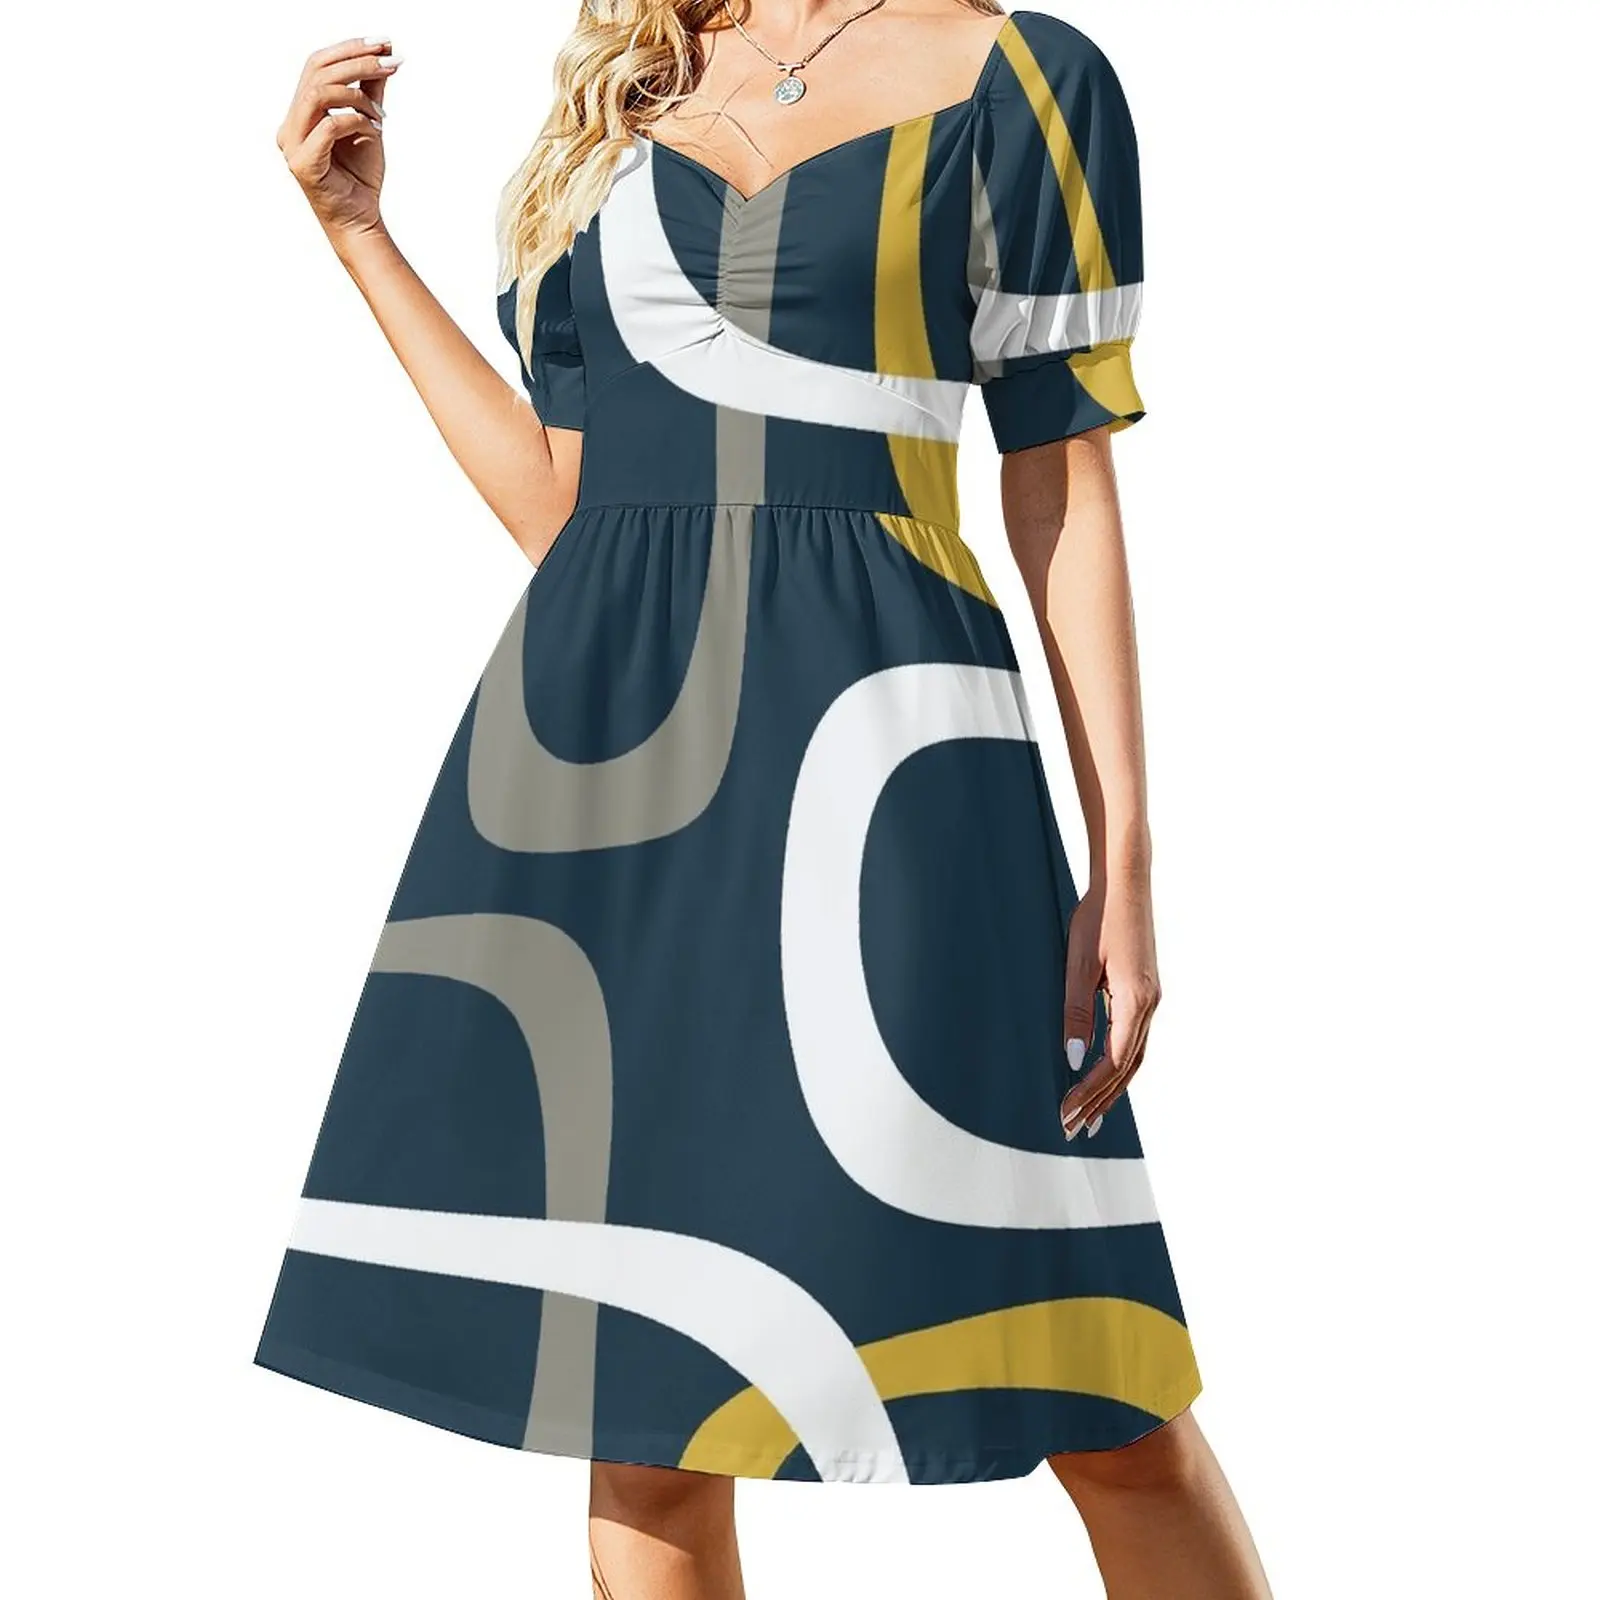 

Midcentury современные петли в ретро-стиле с рисунком, цвет горчичный, серый, белый и темно-синий, вечерние платья для женщин